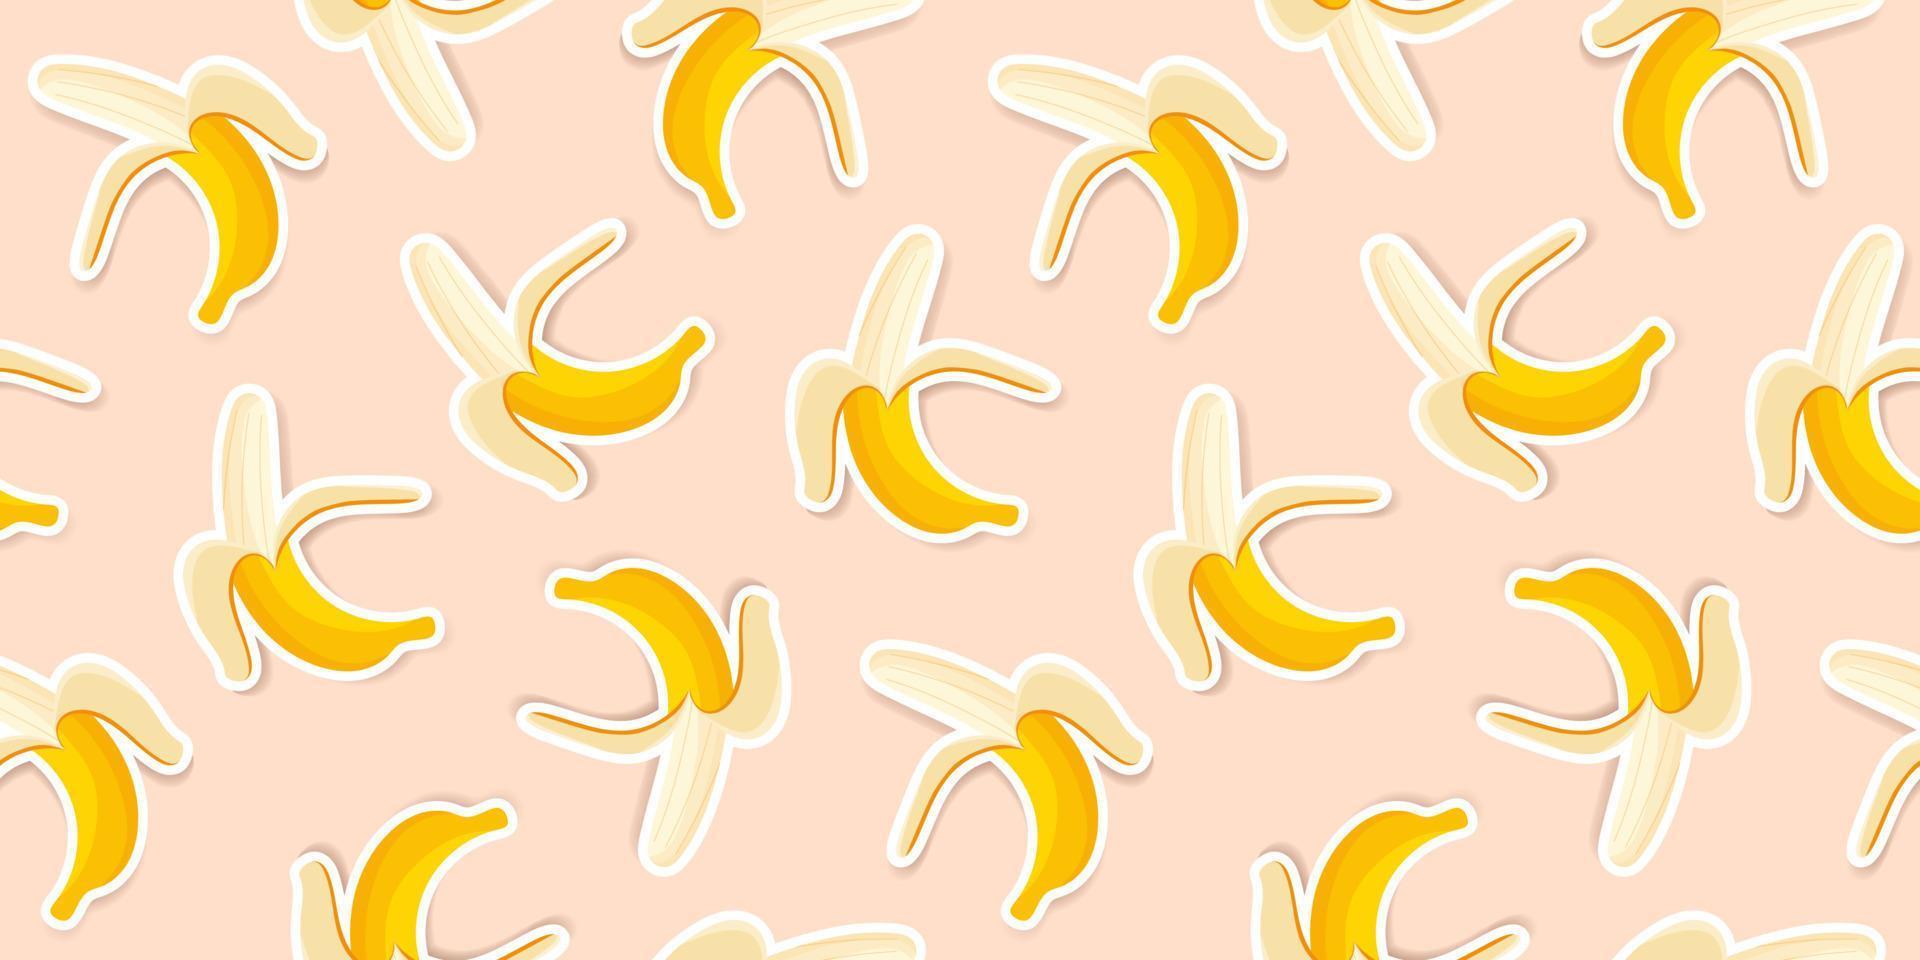 graziose banane gialle su uno sfondo di corallo. design alla moda con motivo a banana per sfondi, stampa, tessuto e cancelleria. modello adesivo banana gialla. frutta vettoriale illustrata.